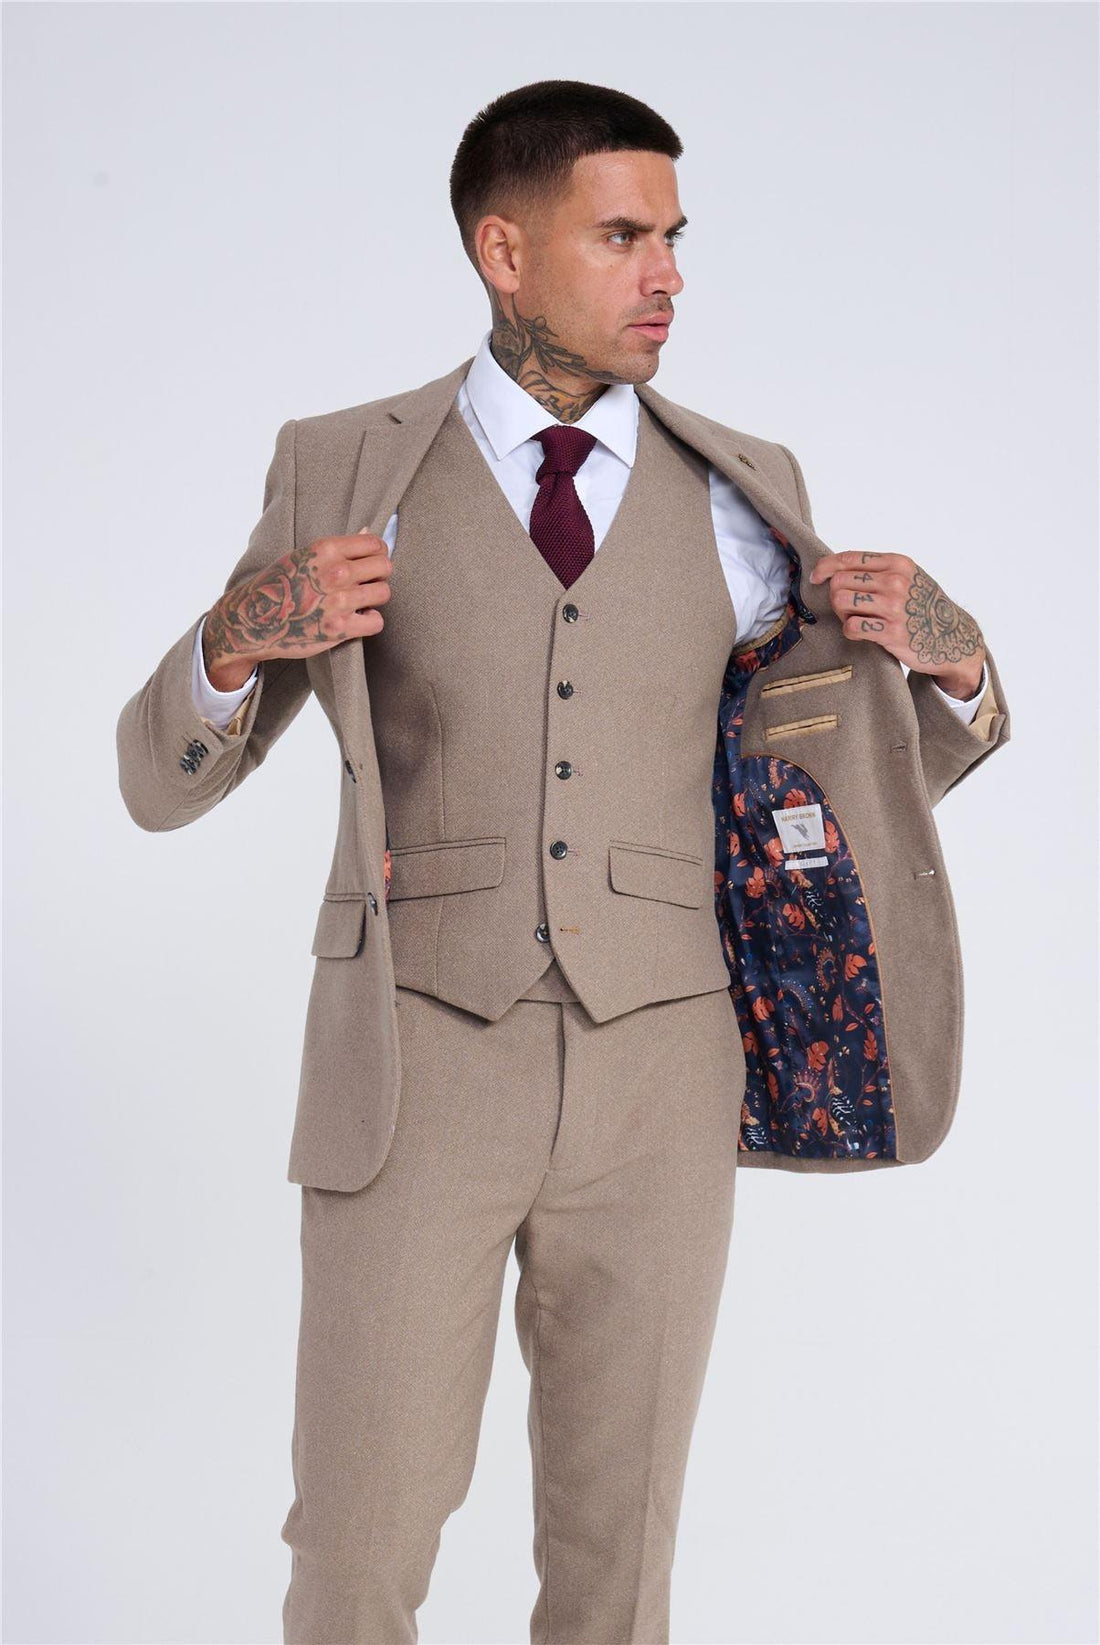 Men's Beige 3 Piece Suit Tweed Wool Herringbone Formal Business Dress Suits - Knighthood Store